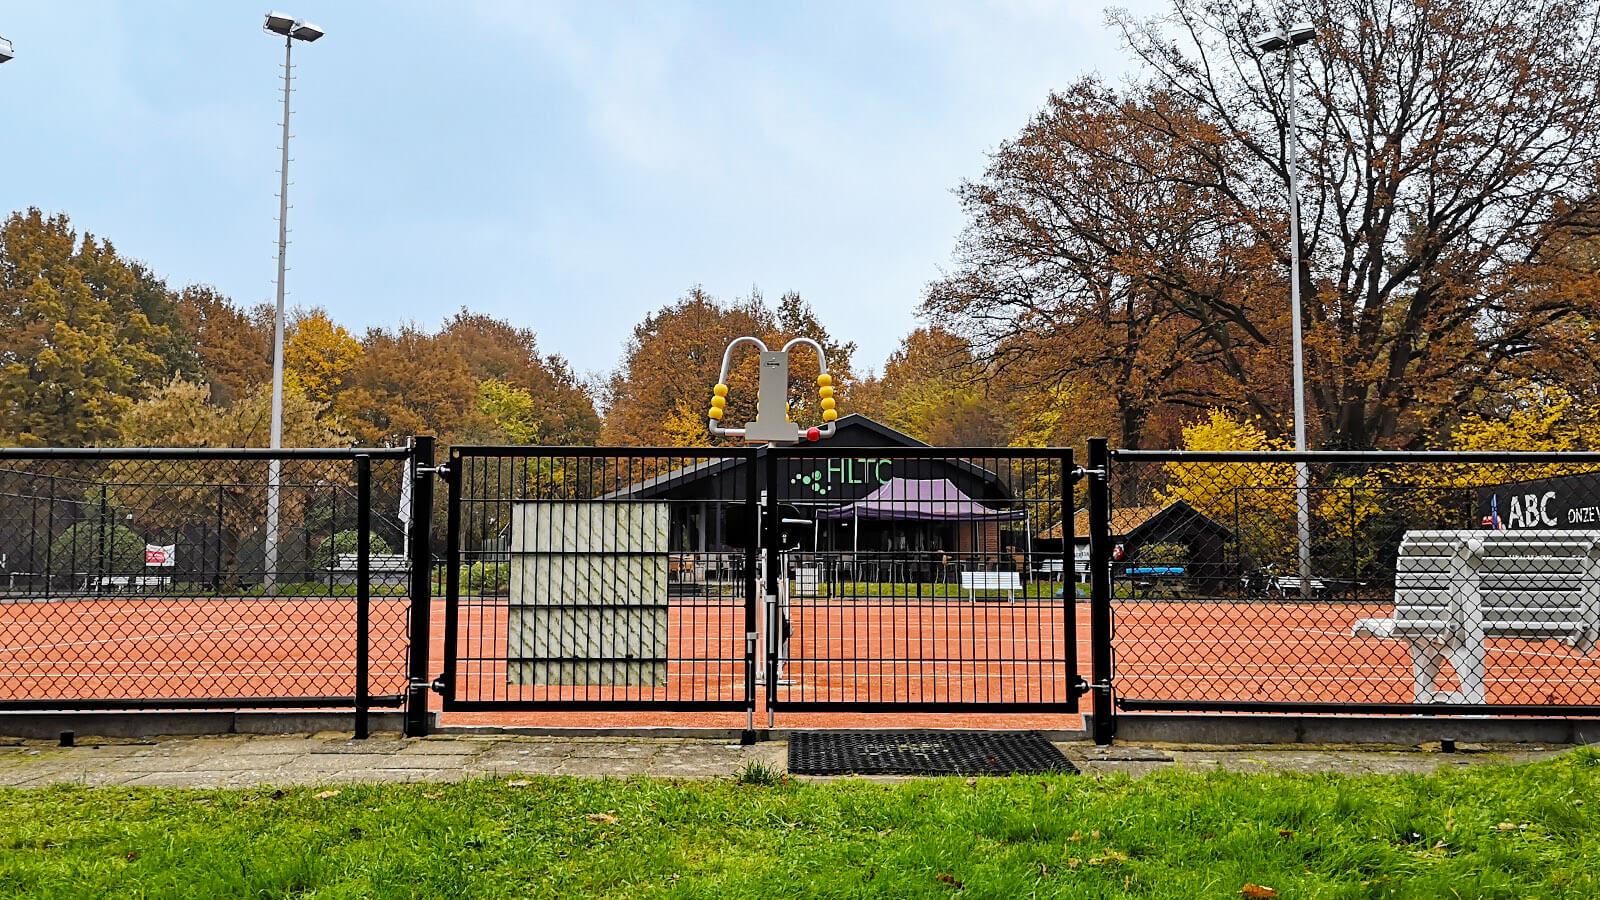 Tennisplatz-doppeltes-tor-Abchekwerk-Heerde